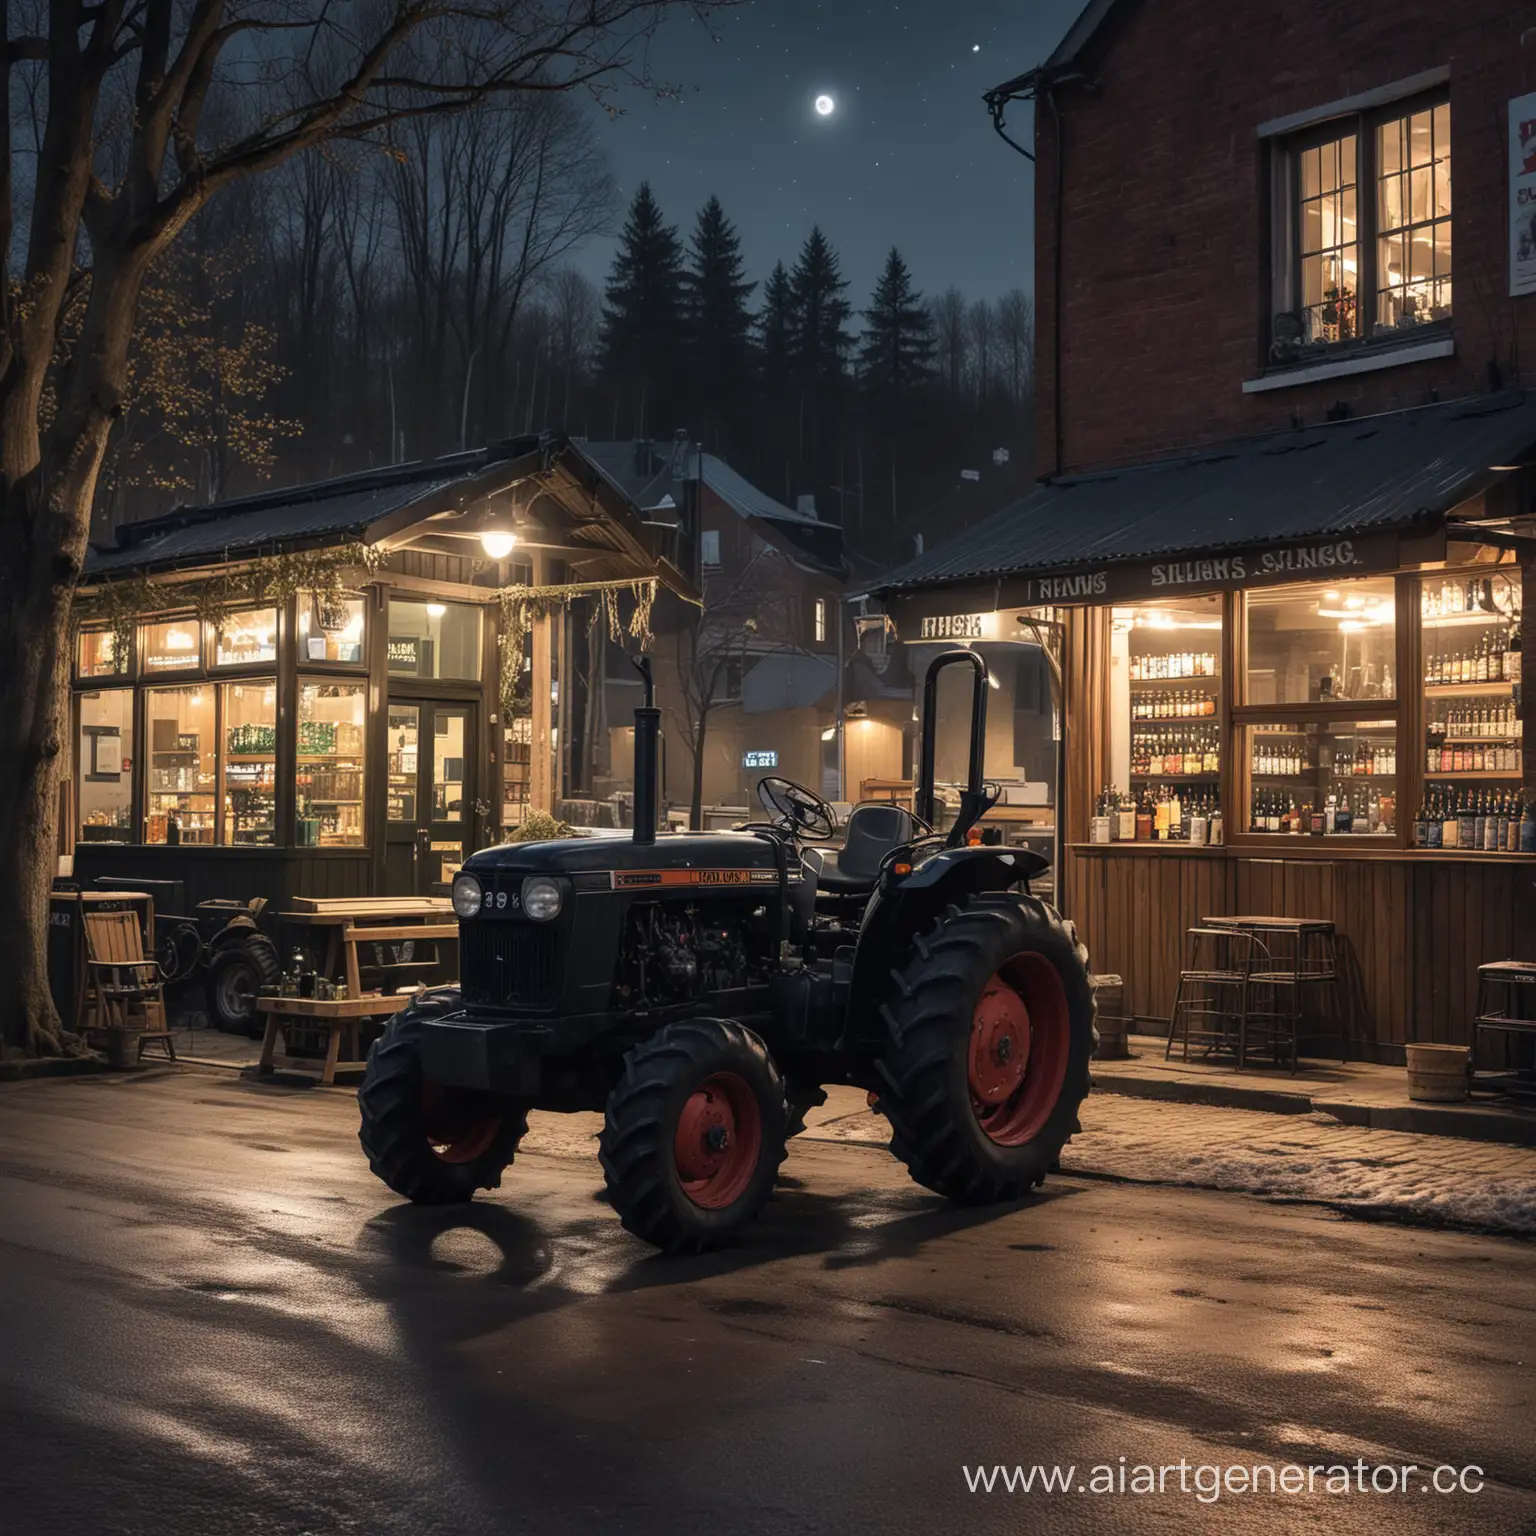 Трактор черного цвета стоит рядом с пивным магазином, также мы видим рядом лес, на улице почти весна, ночь